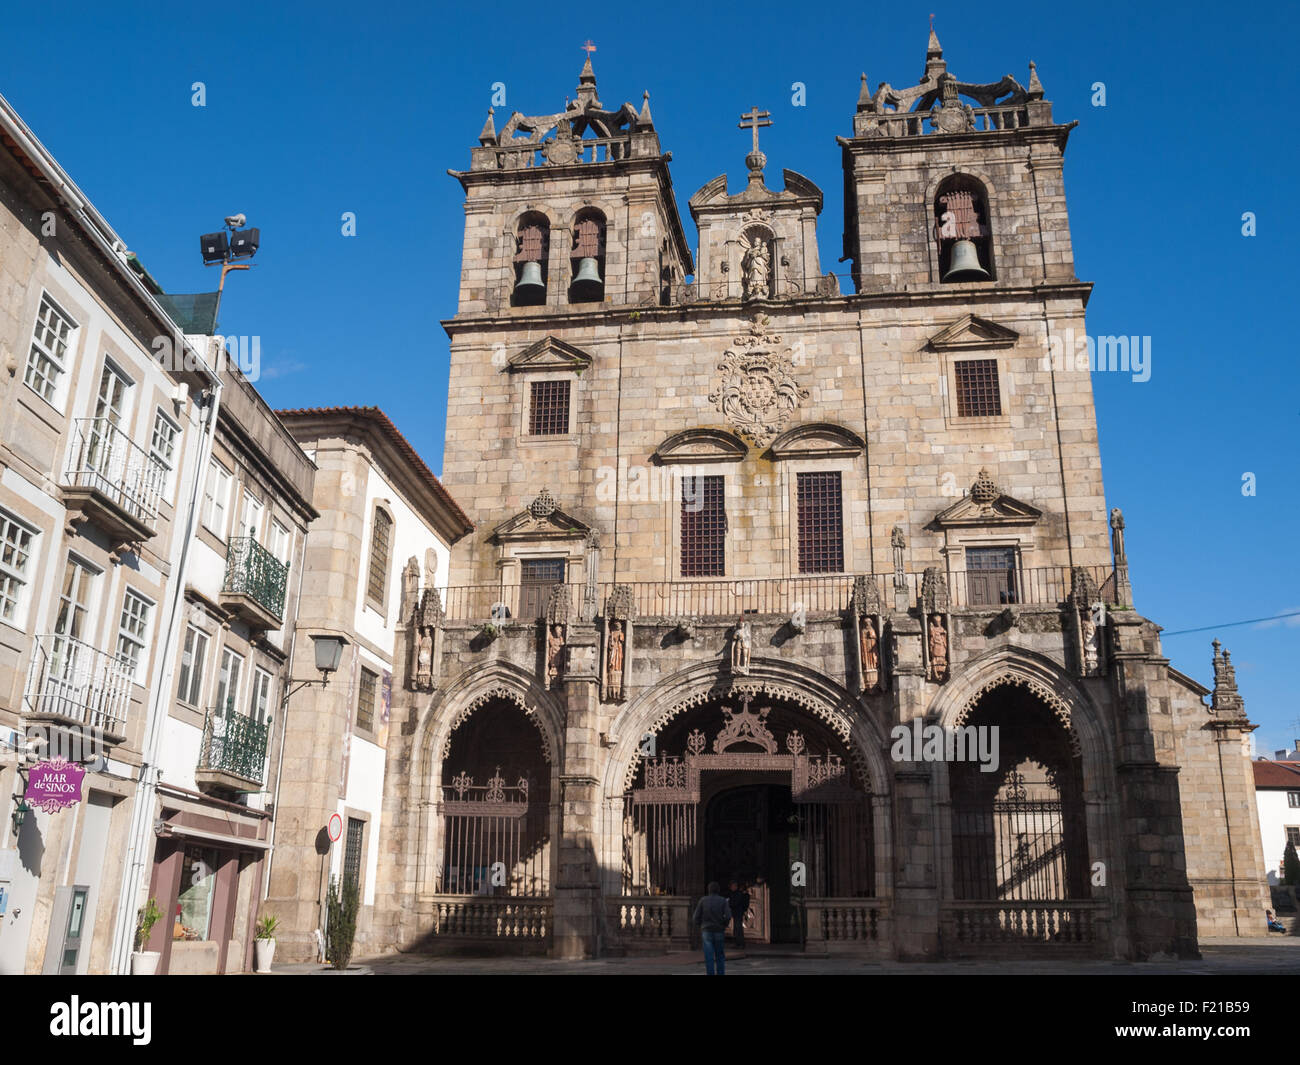 Braga Se Cathedral facade Stock Photo